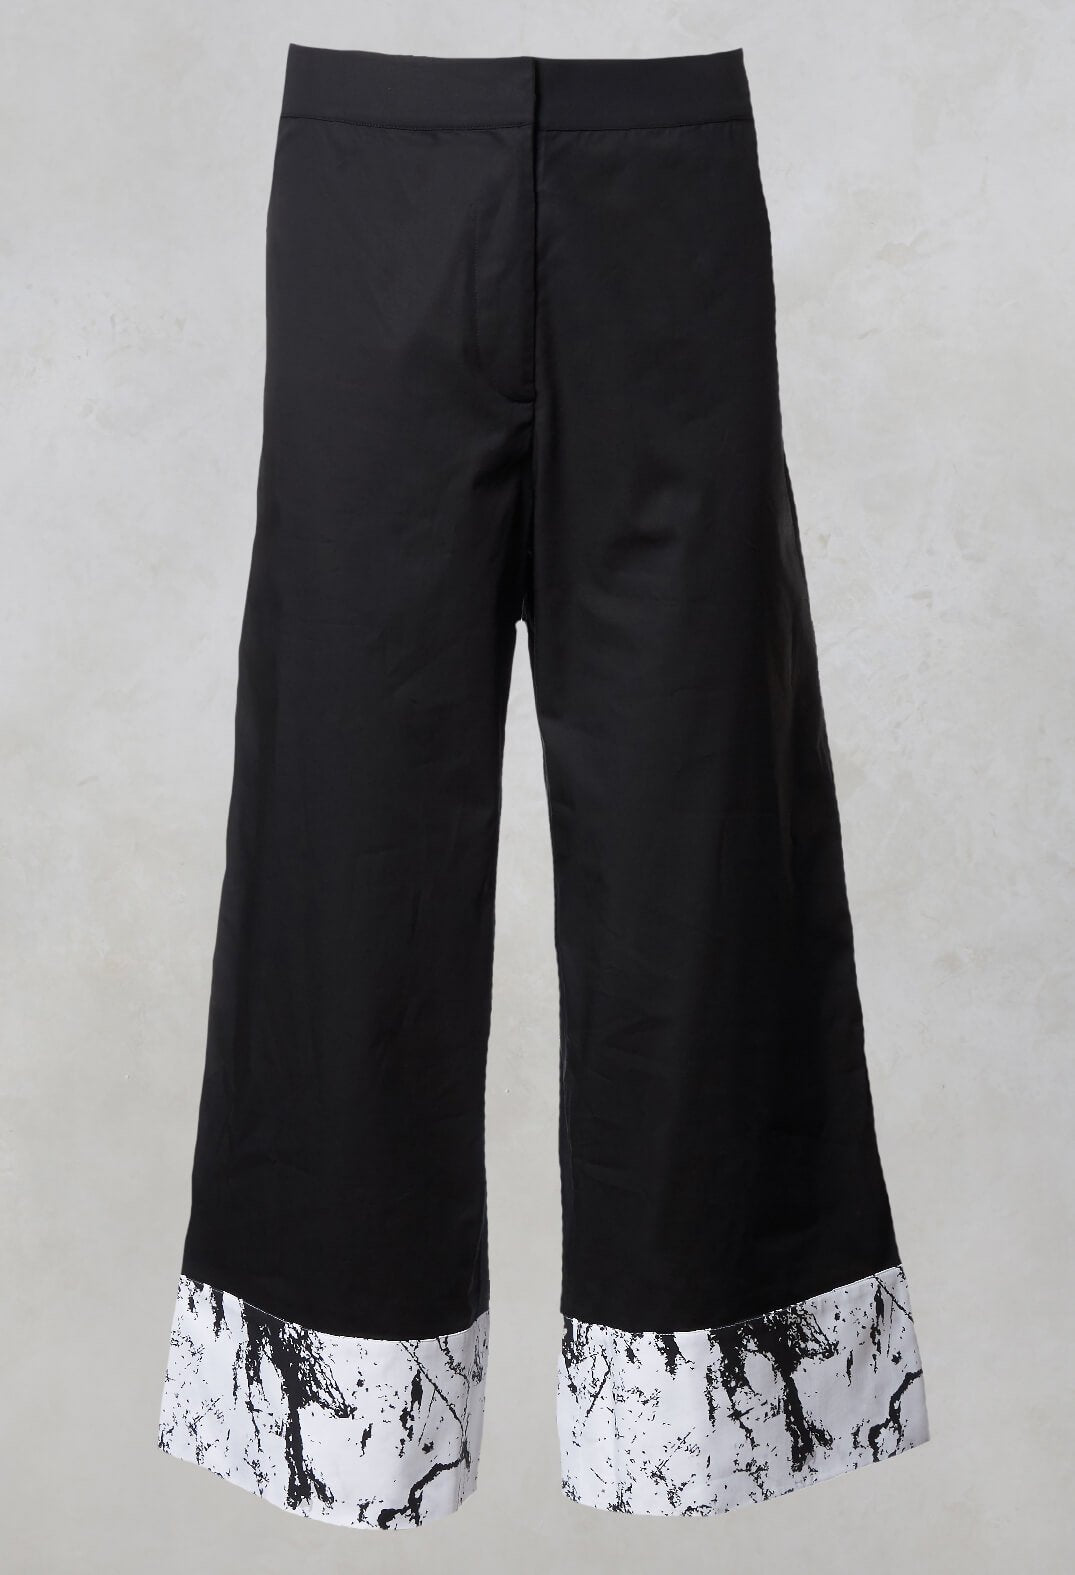 Wide Leg Contrast Trousers in Haruna Black / Print Gaia